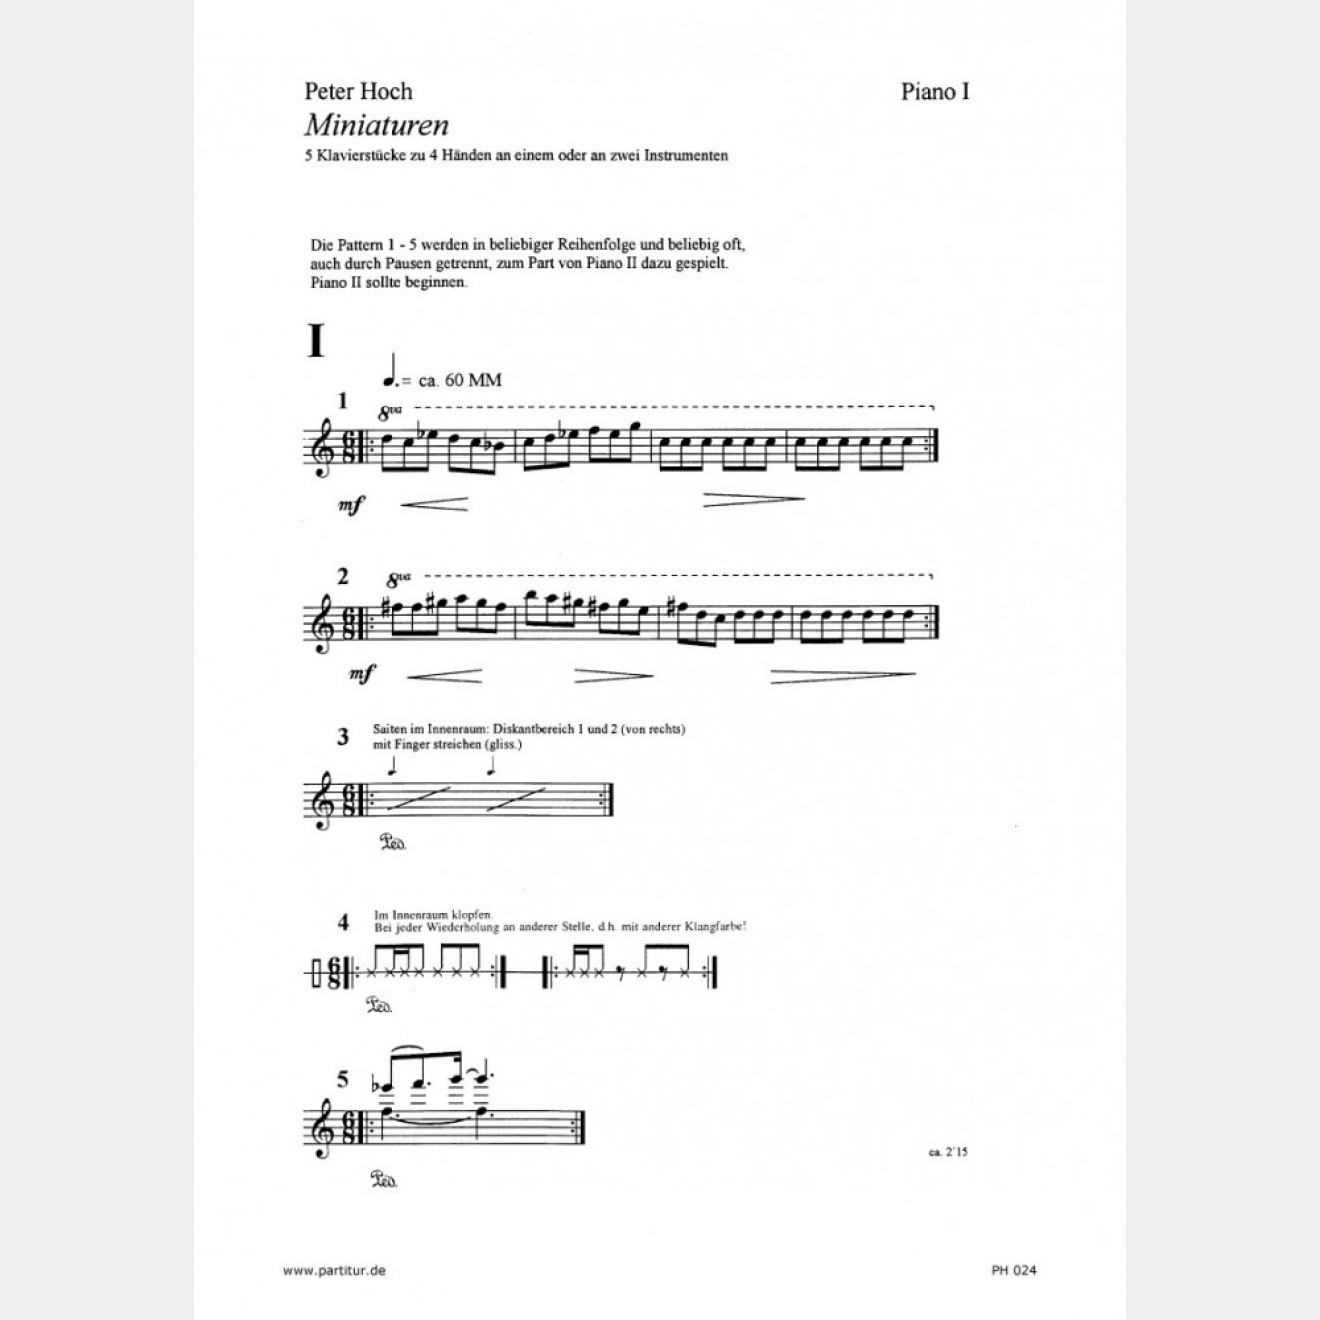 Miniaturen, 5 Klavierstücke for 4 hands (Score and Part), 9`